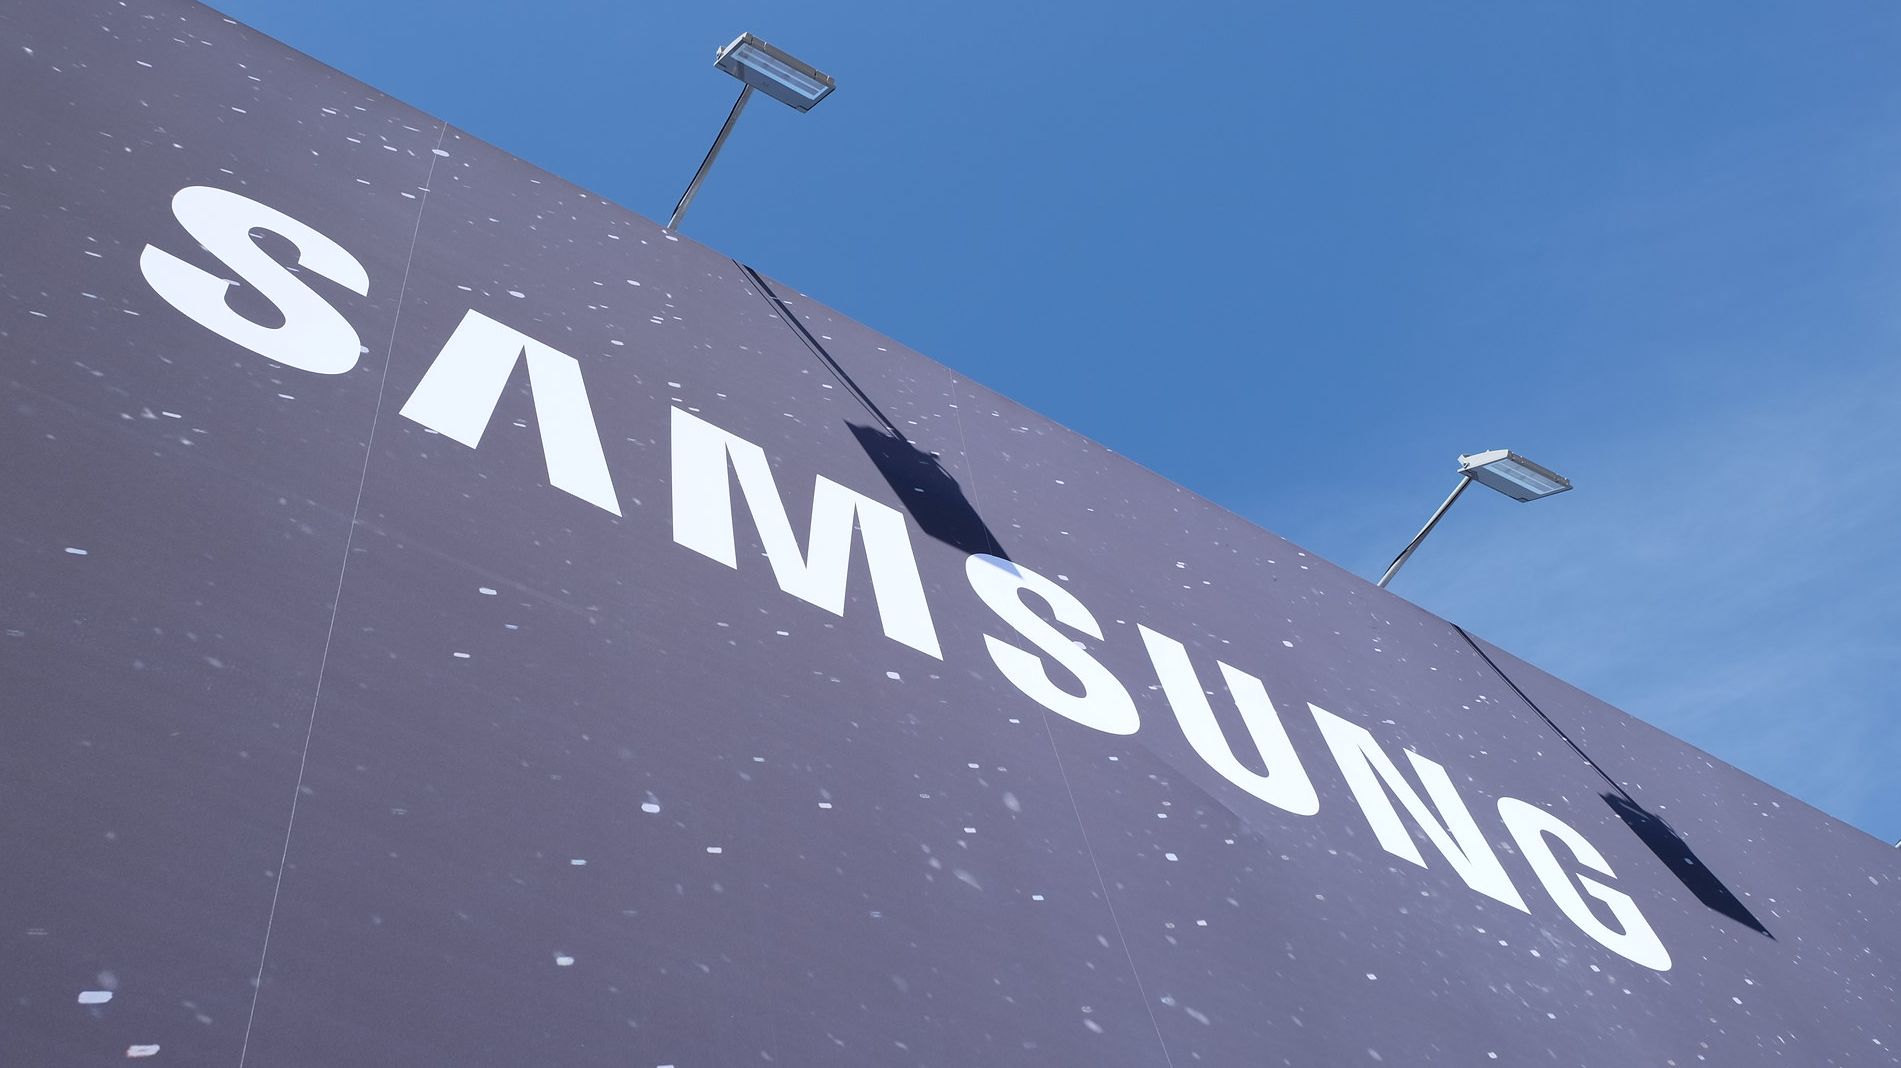 Логотип Samsung 